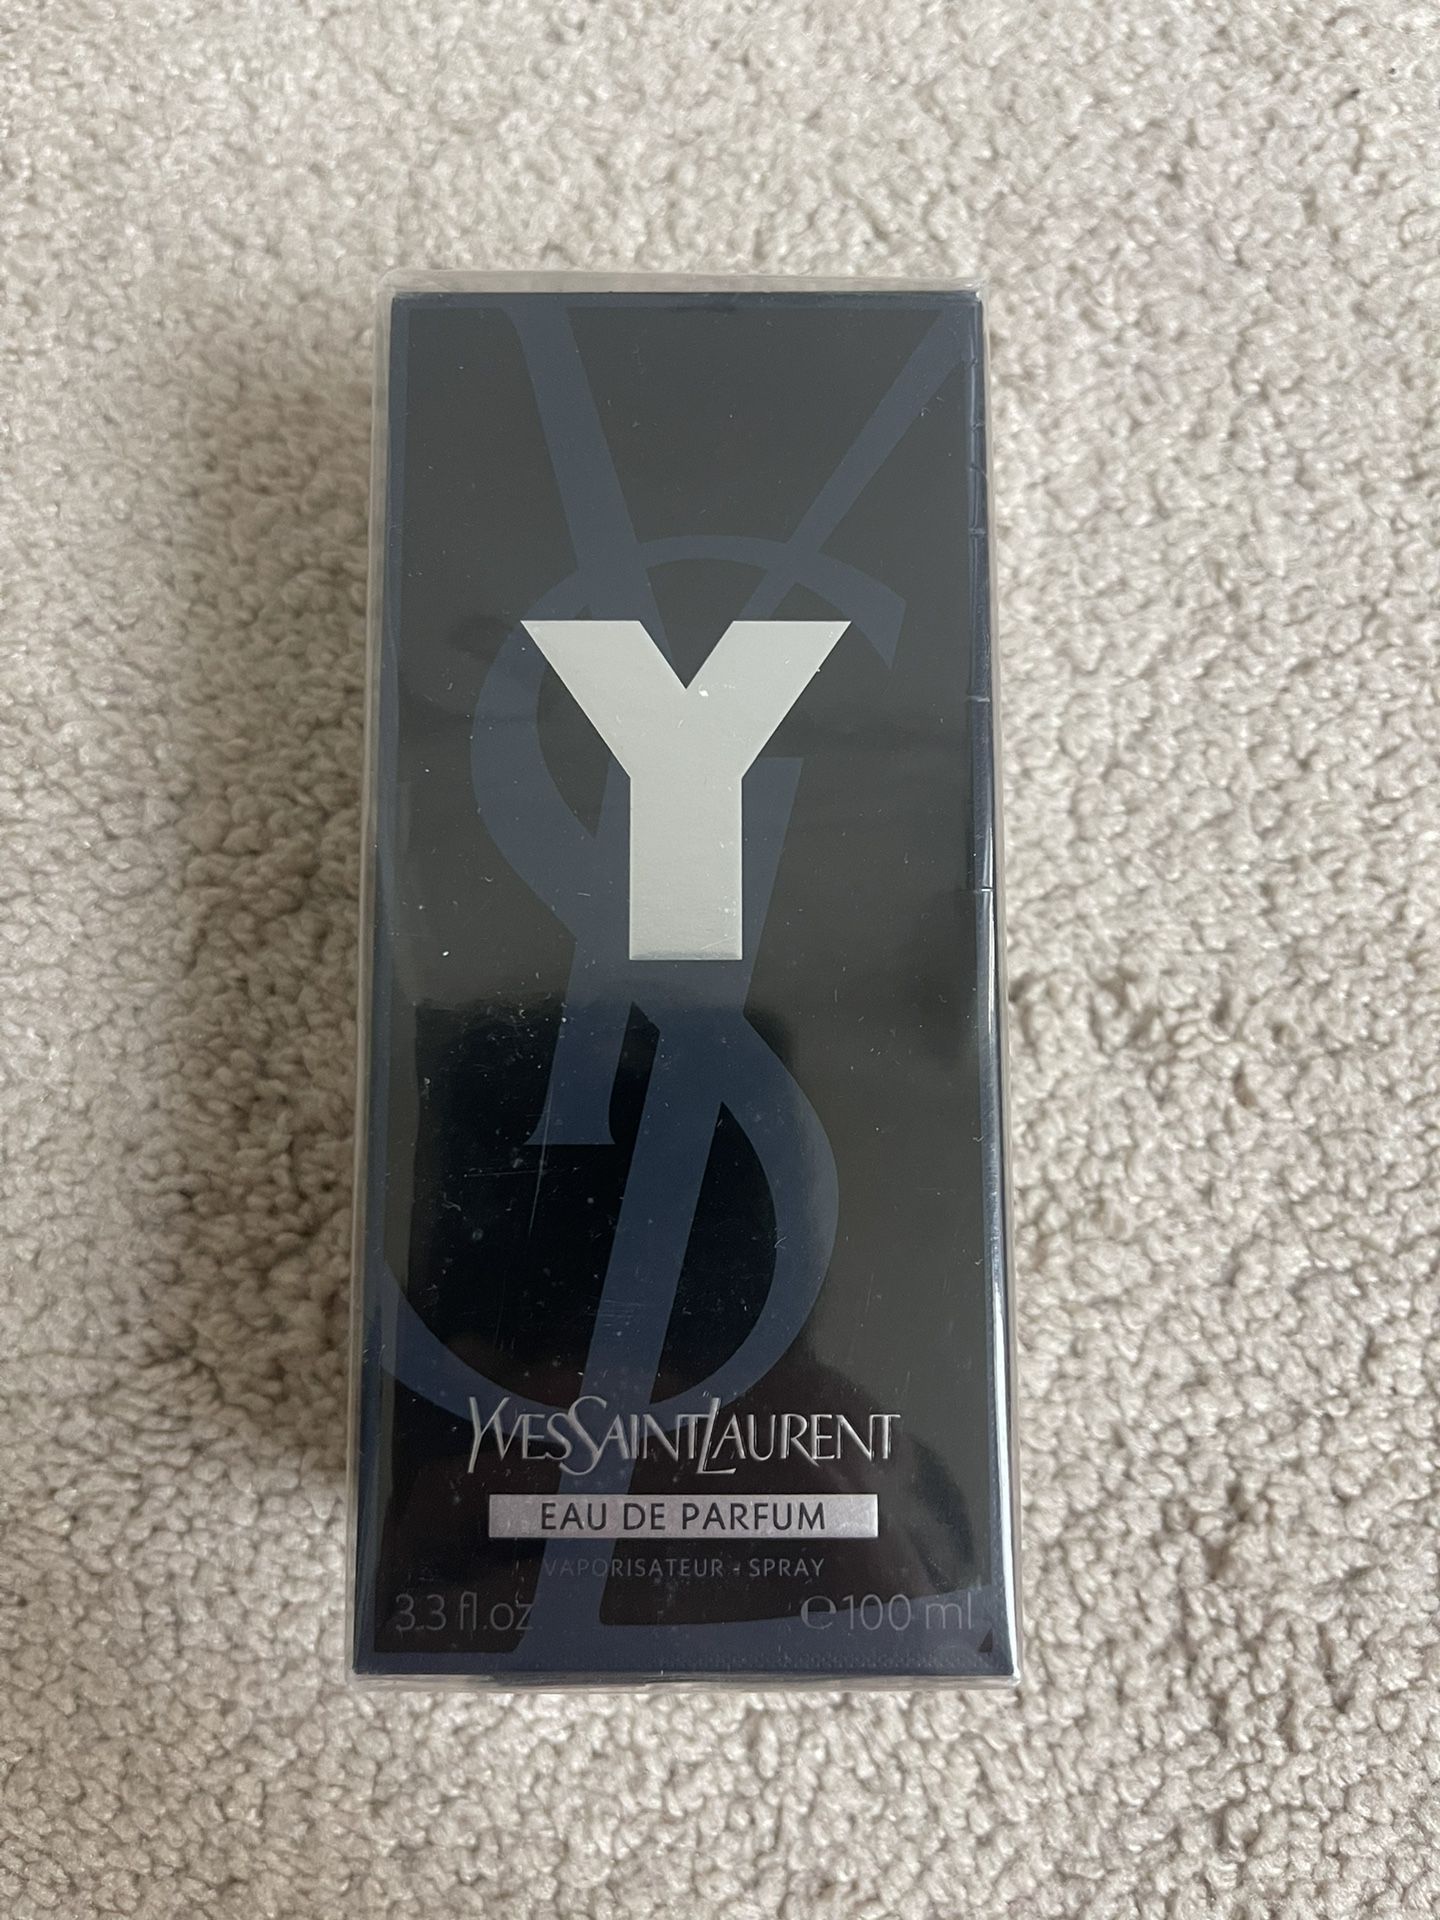 Yves Saint Laurent Eau de Parfum(Men’s Cologne)